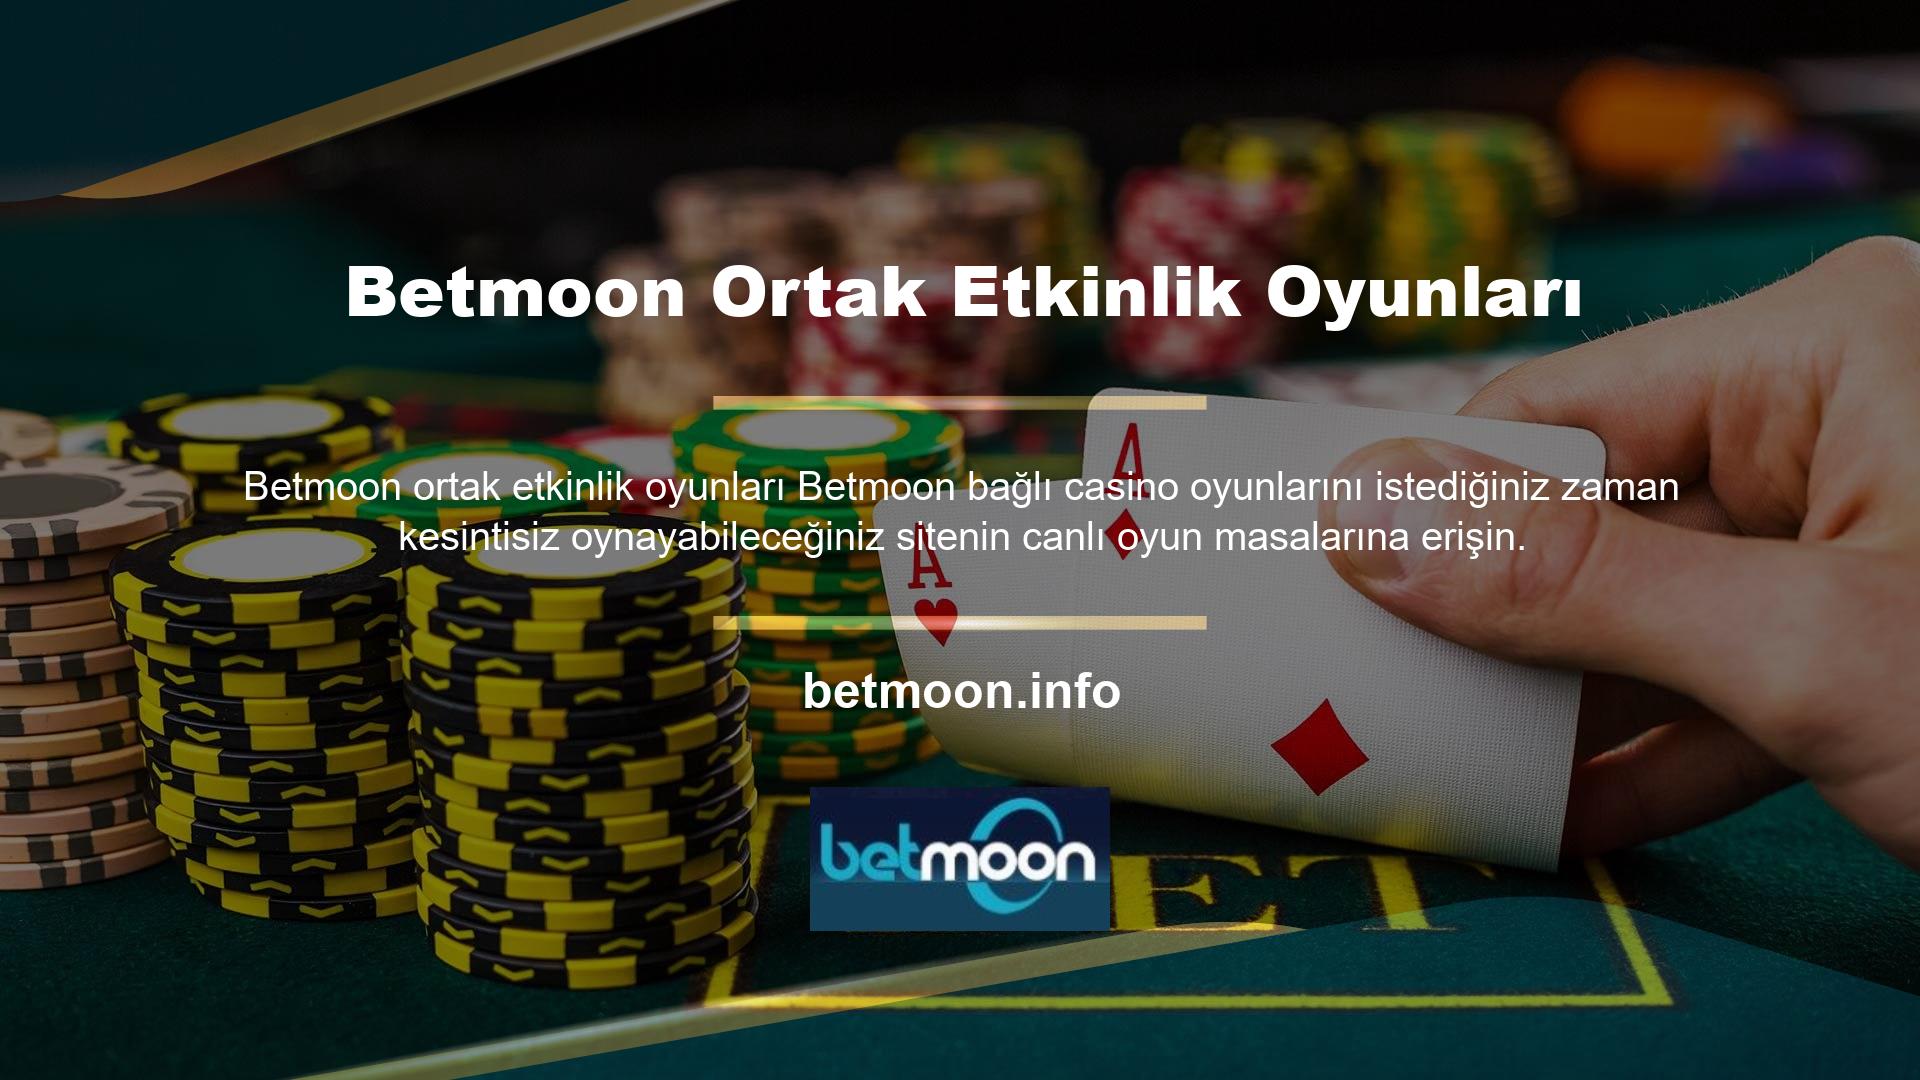 Ayrıca kazancınızı her geçen gün artırmak için Betmoon canlı casino oyunları bonus çeşitlerini de sitede değerlendirebilirsiniz